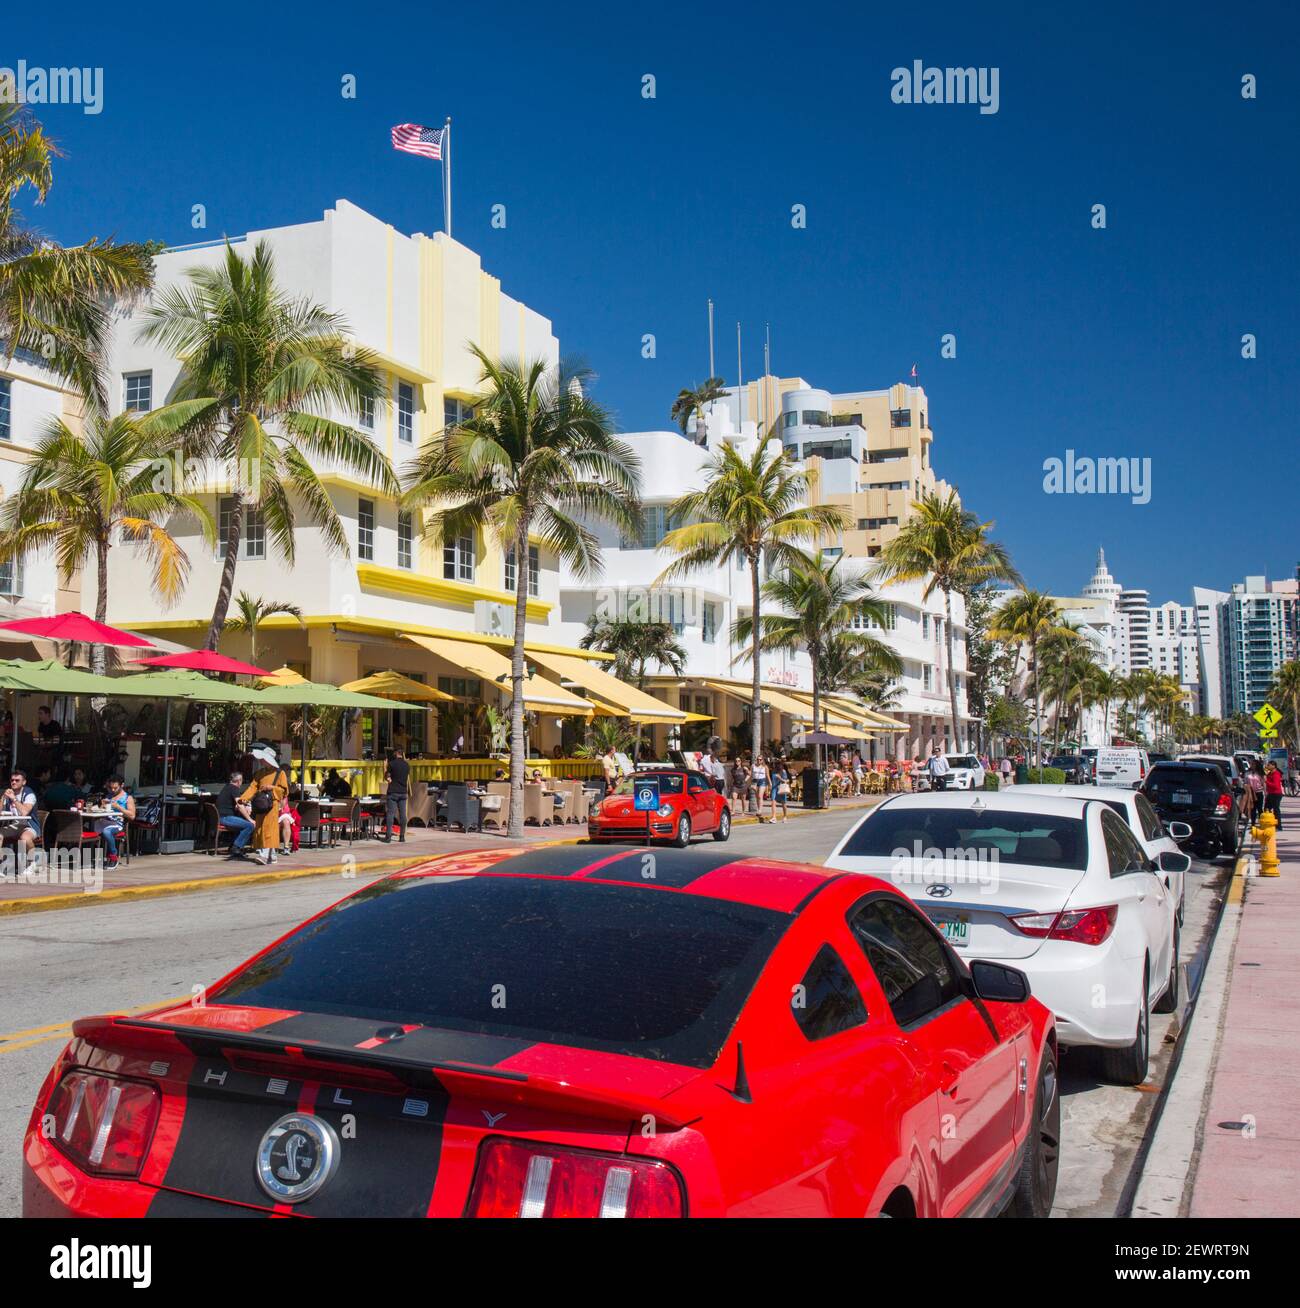 Vue sur Ocean Drive, Red Ford Mustang en premier plan, quartier historique art déco, South Beach, Miami Beach, Floride, États-Unis d'Amérique Banque D'Images